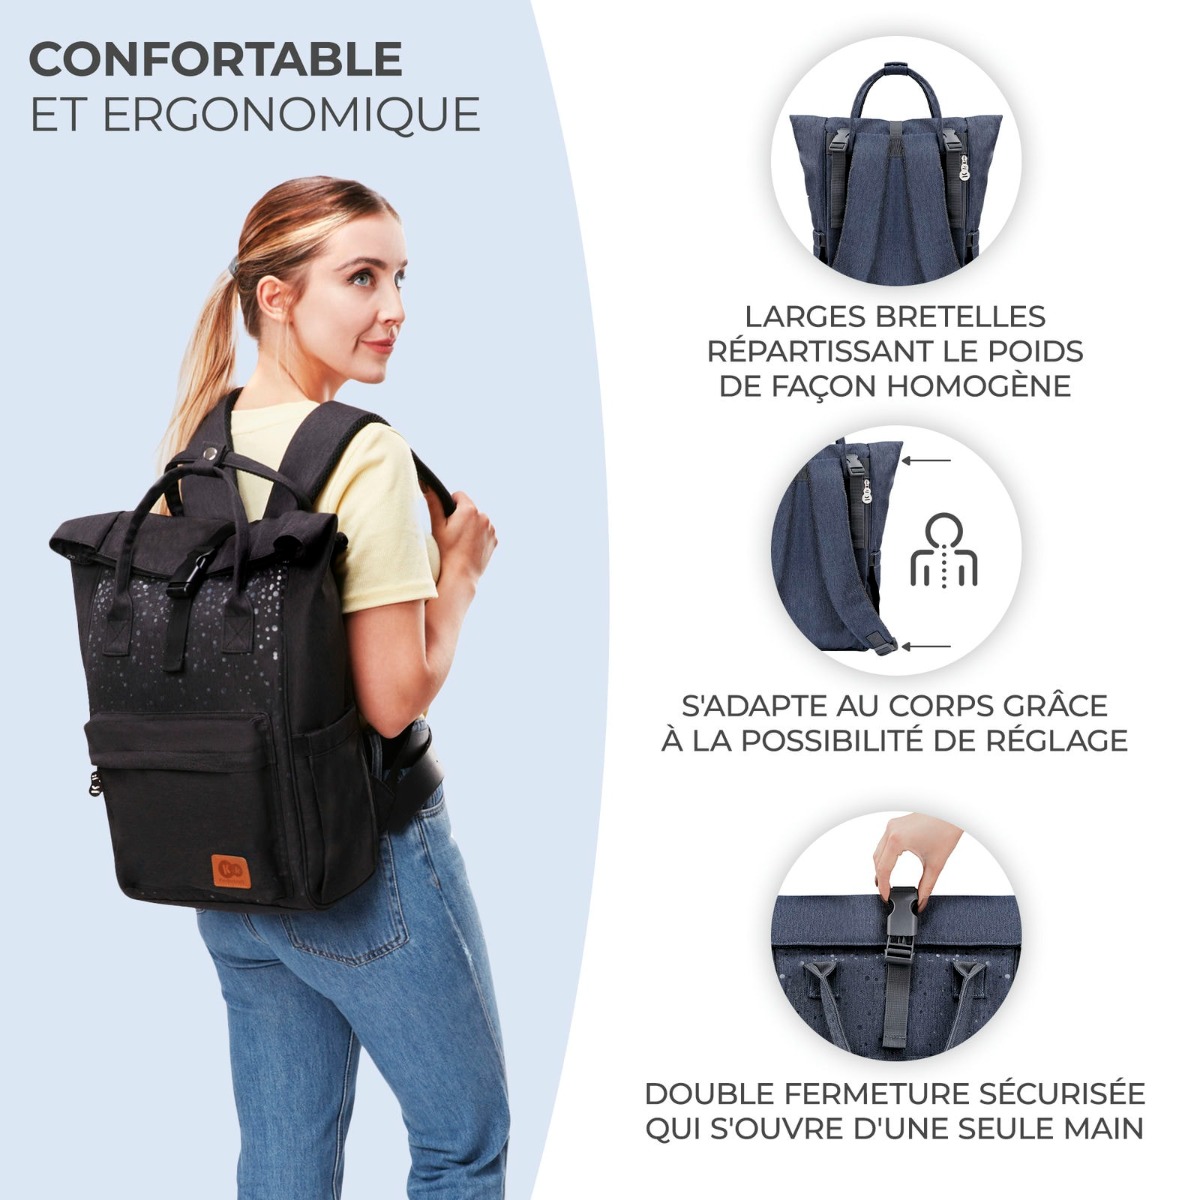 6FR-KK-moonpack-bleu-confortable-et-ergonomique